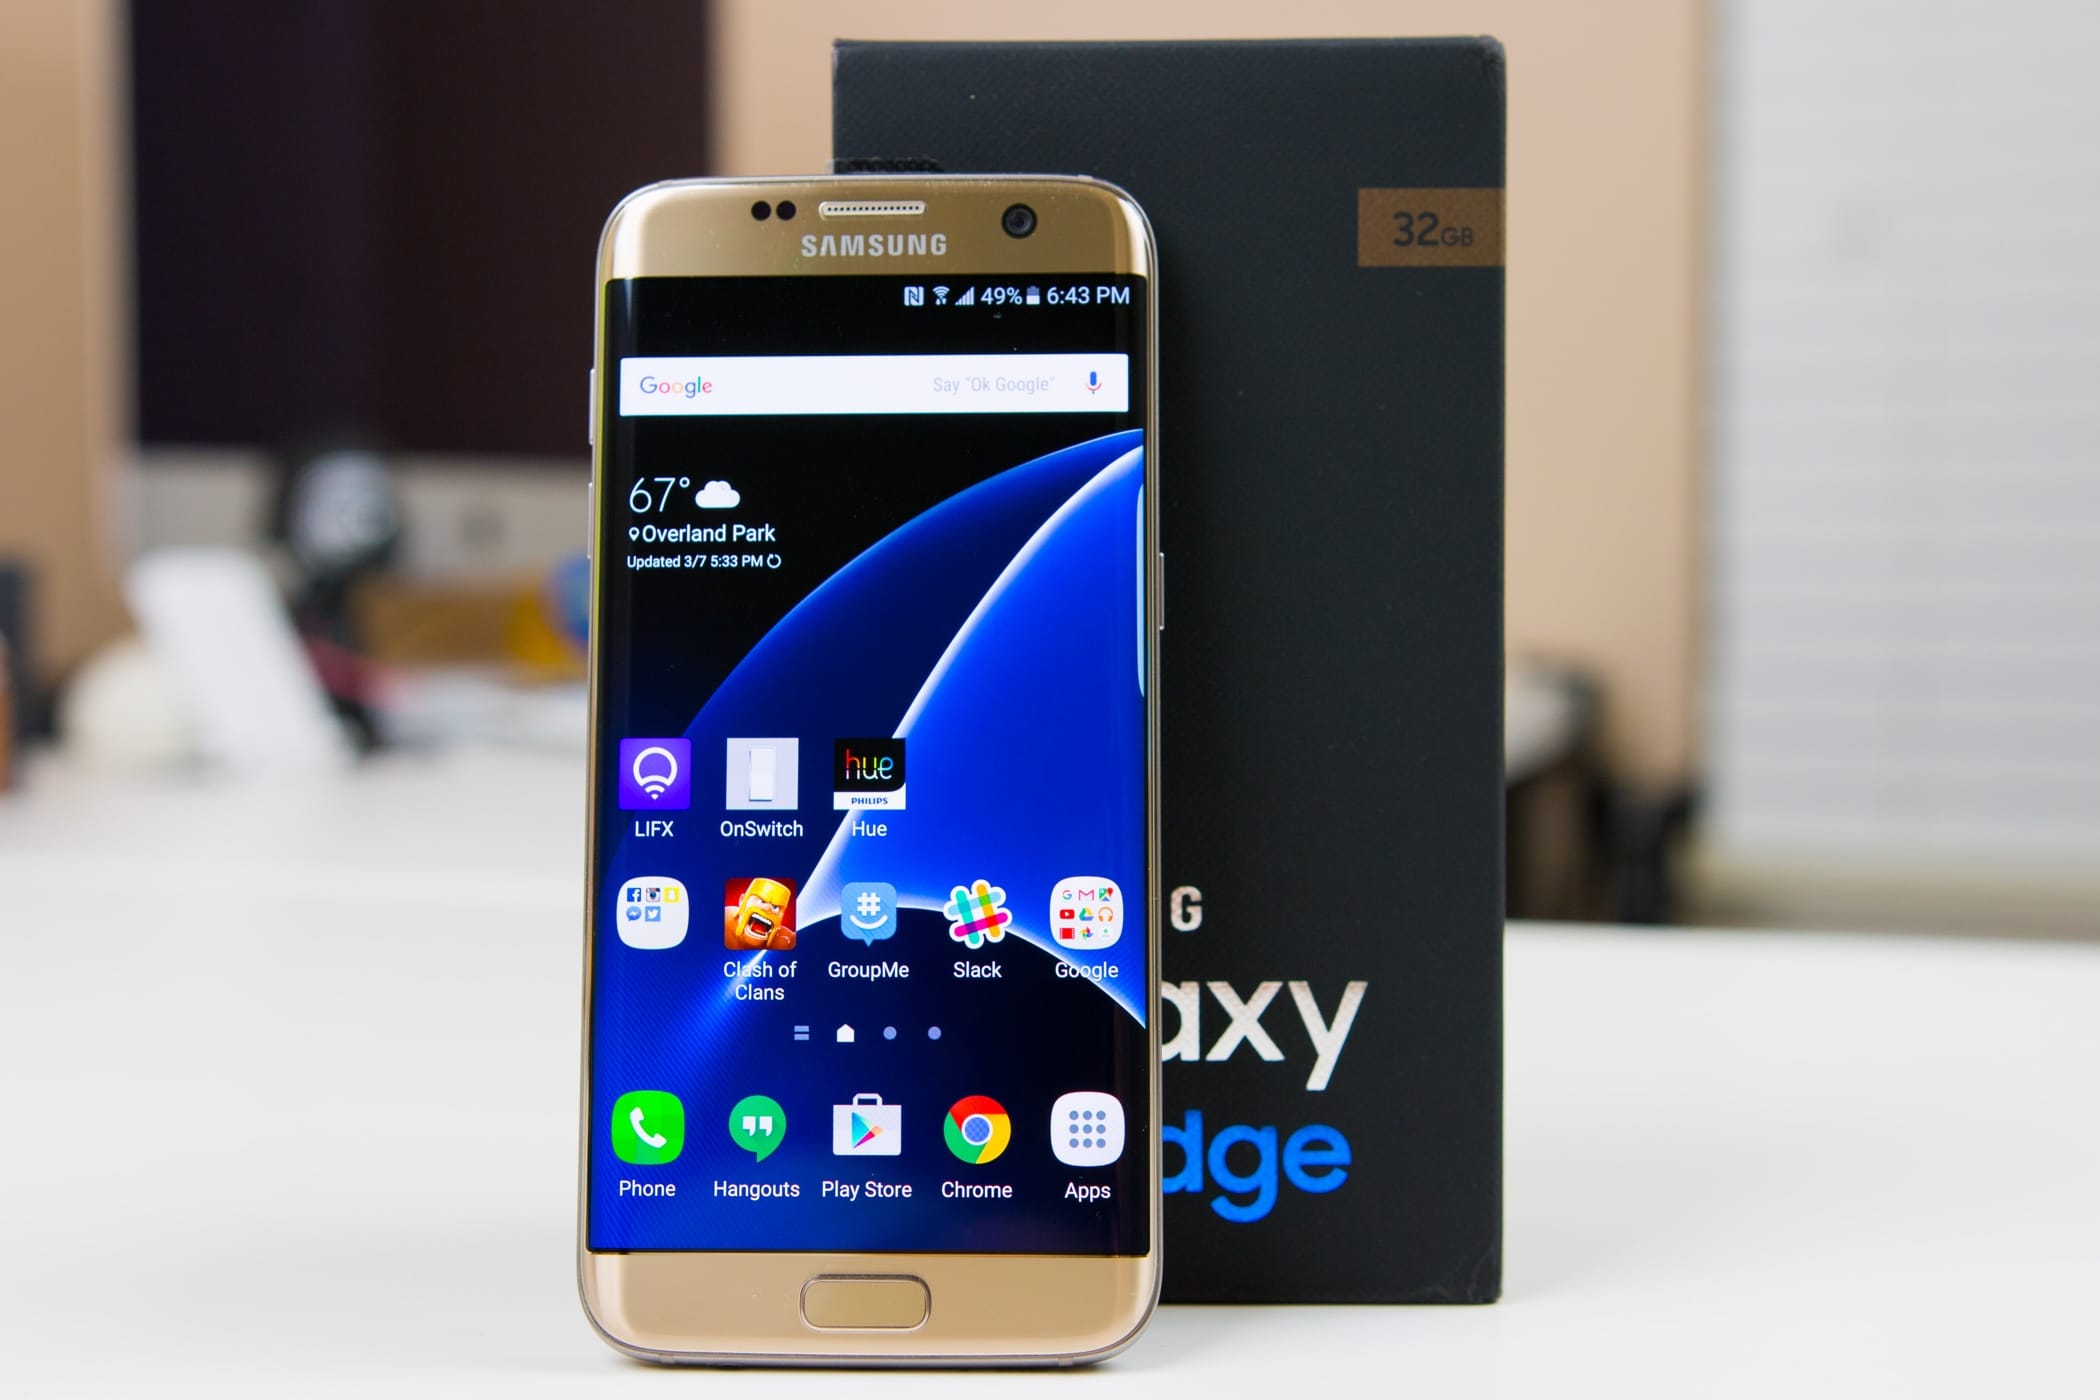 Śladami Galaxy Note 7: Smartphone Samsung Galaxy S7 Edge spalił się po 3 latach użytkowania